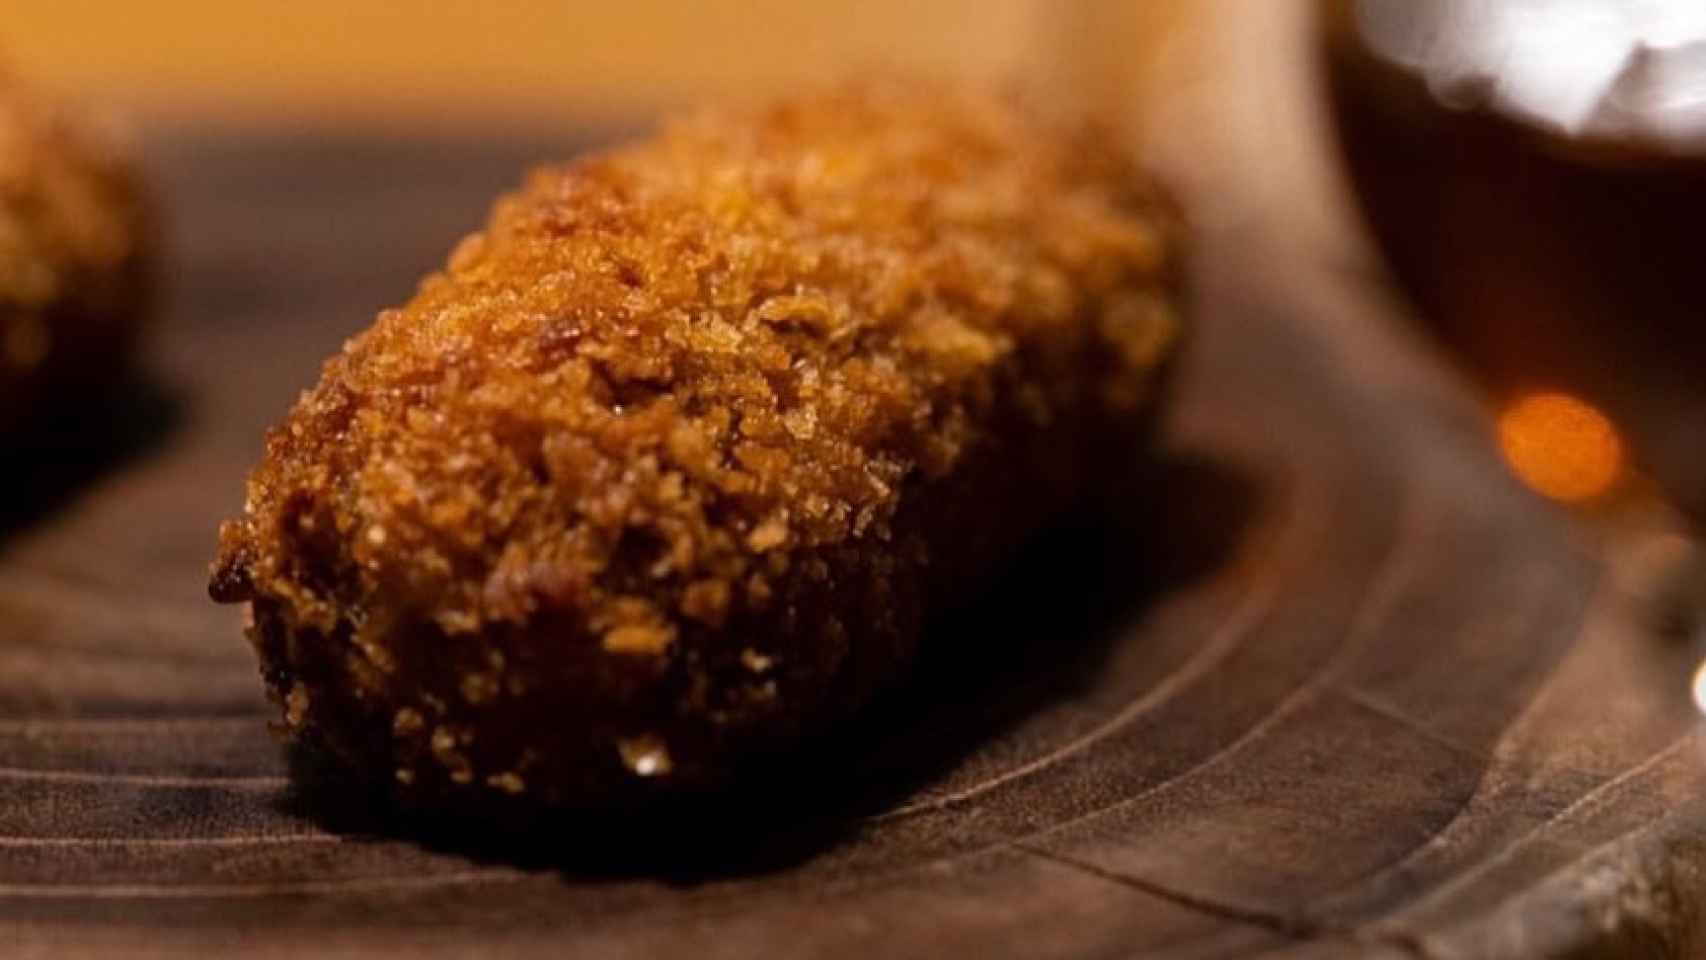 Croqueta de pato asado del restaurante Suculent en Barcelona